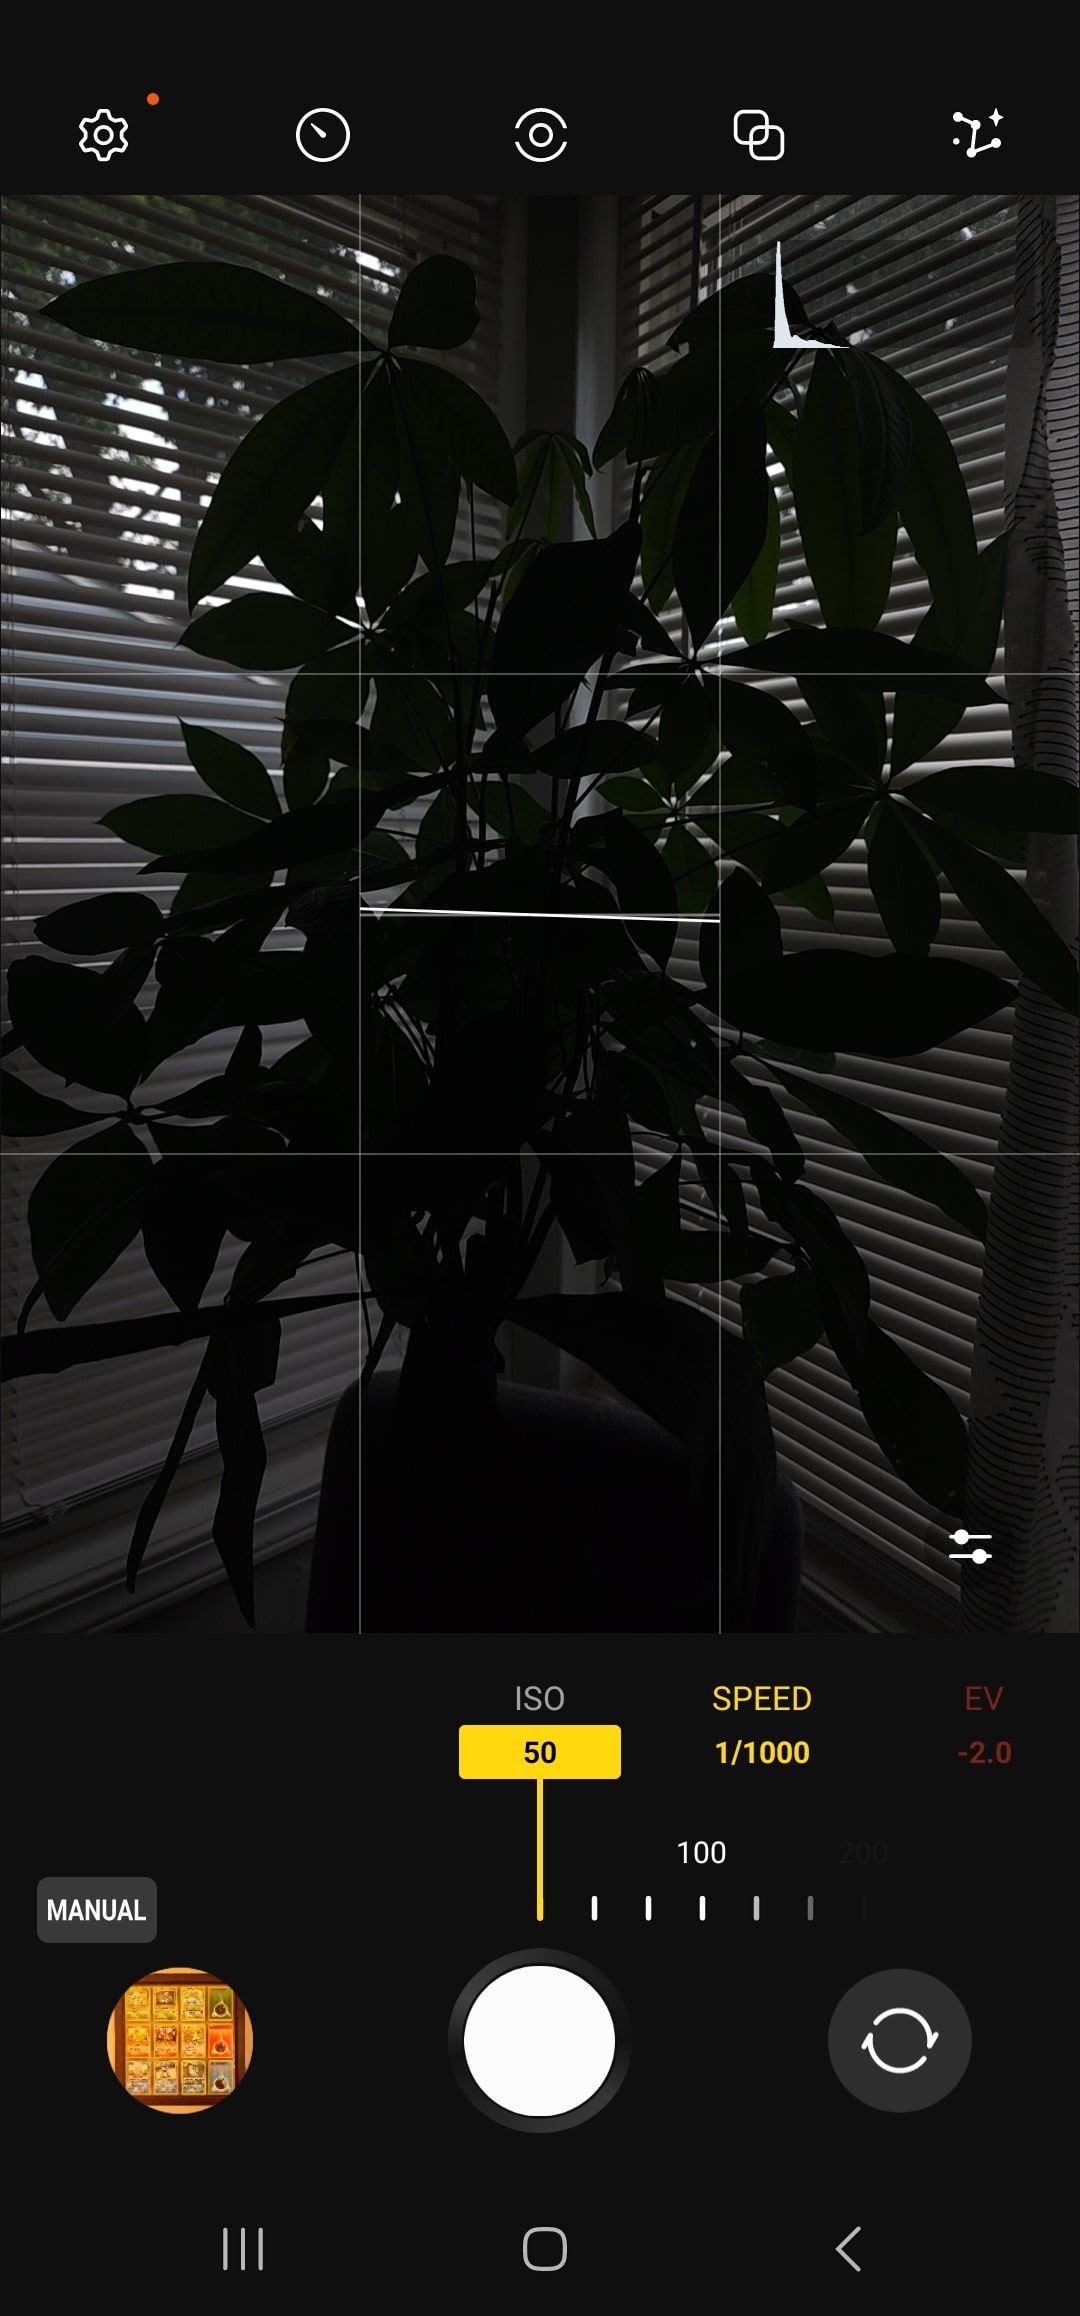 Aplicativo Samsung Expert RAW tirando uma foto com ISO baixo.